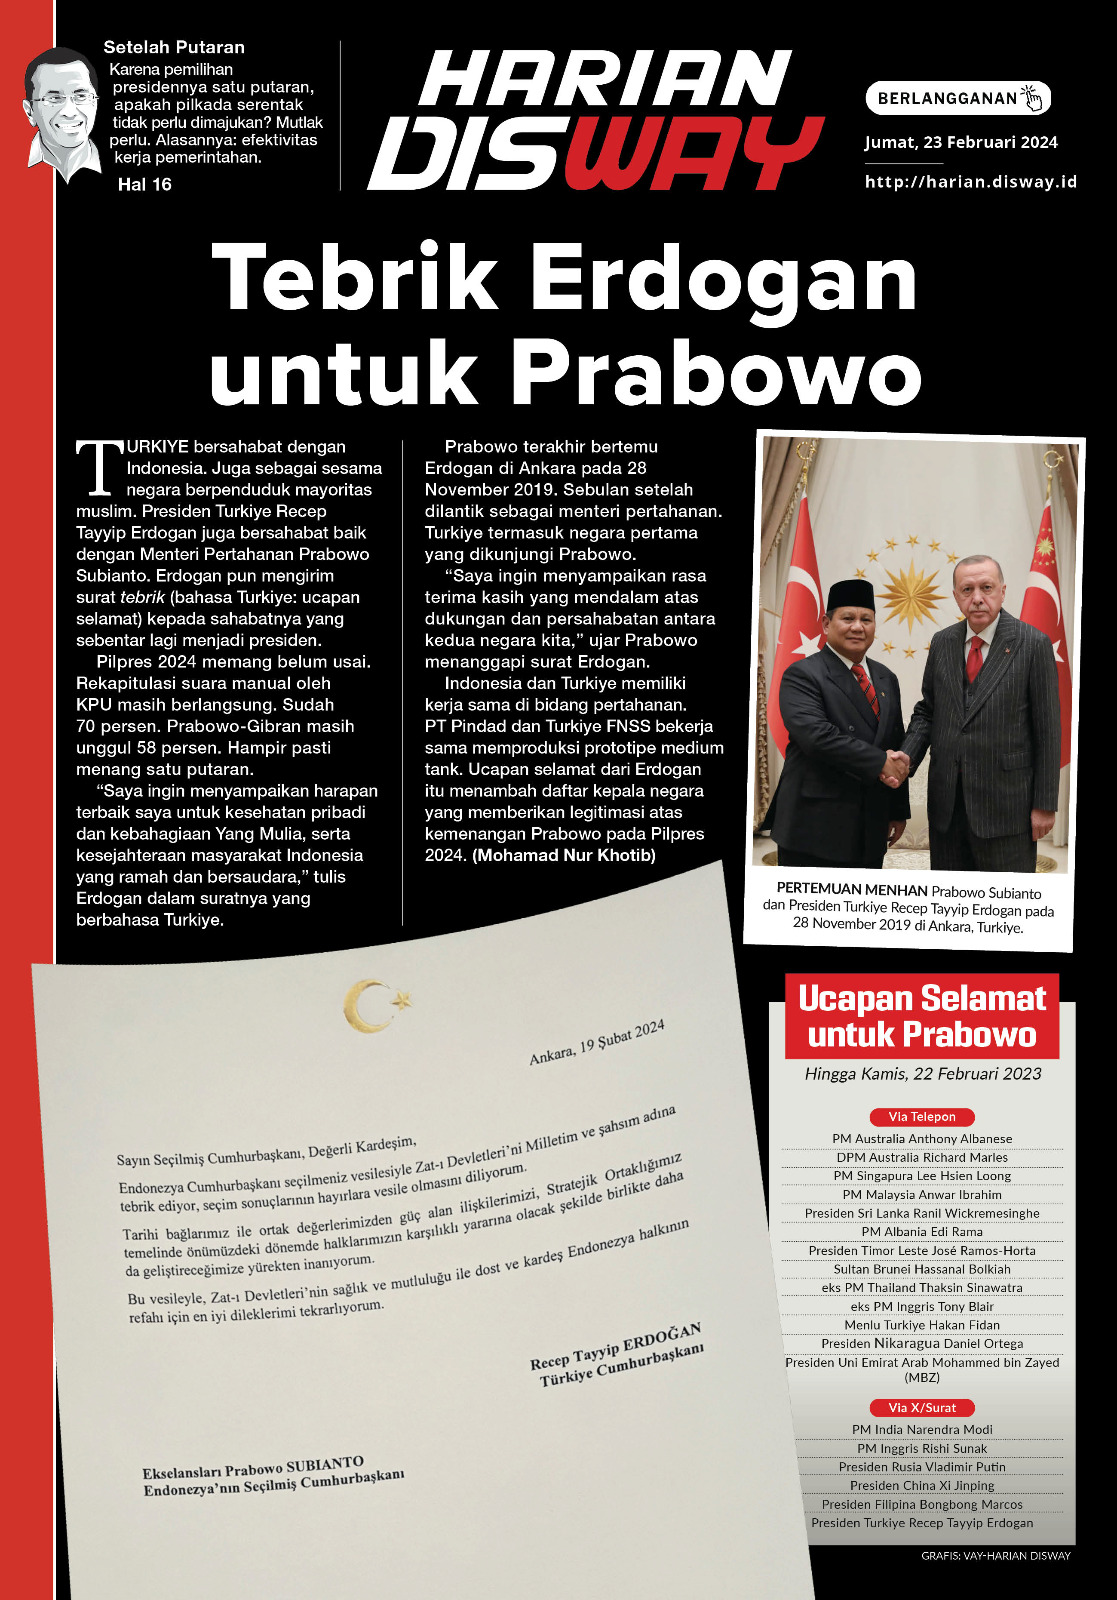 Tebrik Erdogan untuk Prabowo